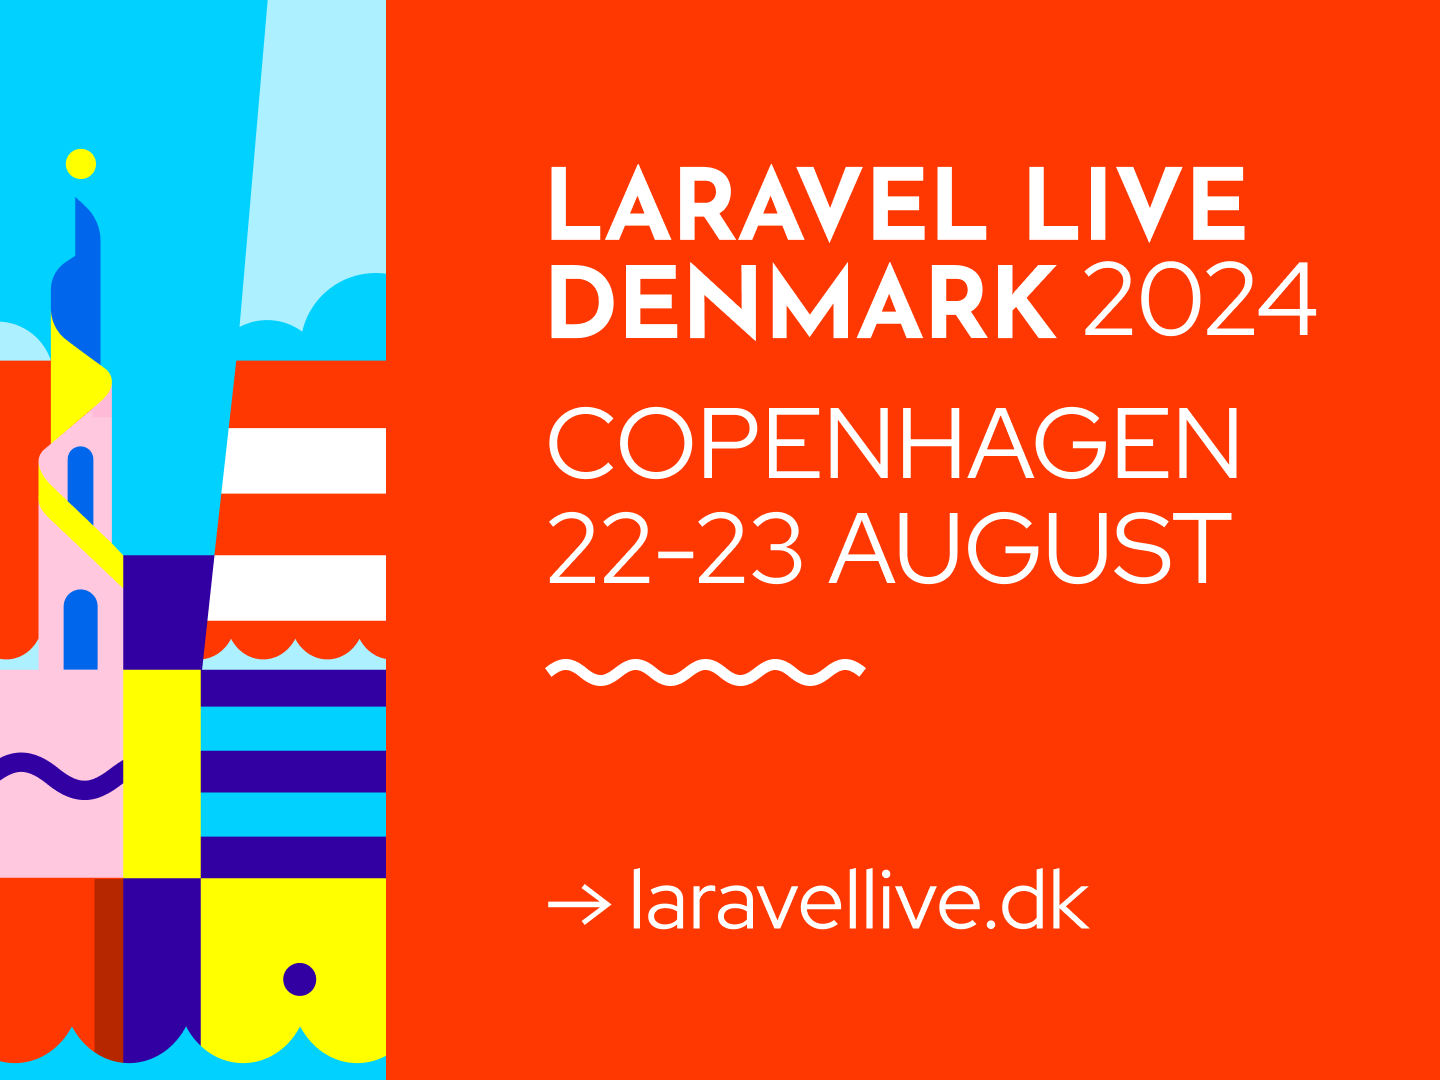 Laravel Live Denmark 2024